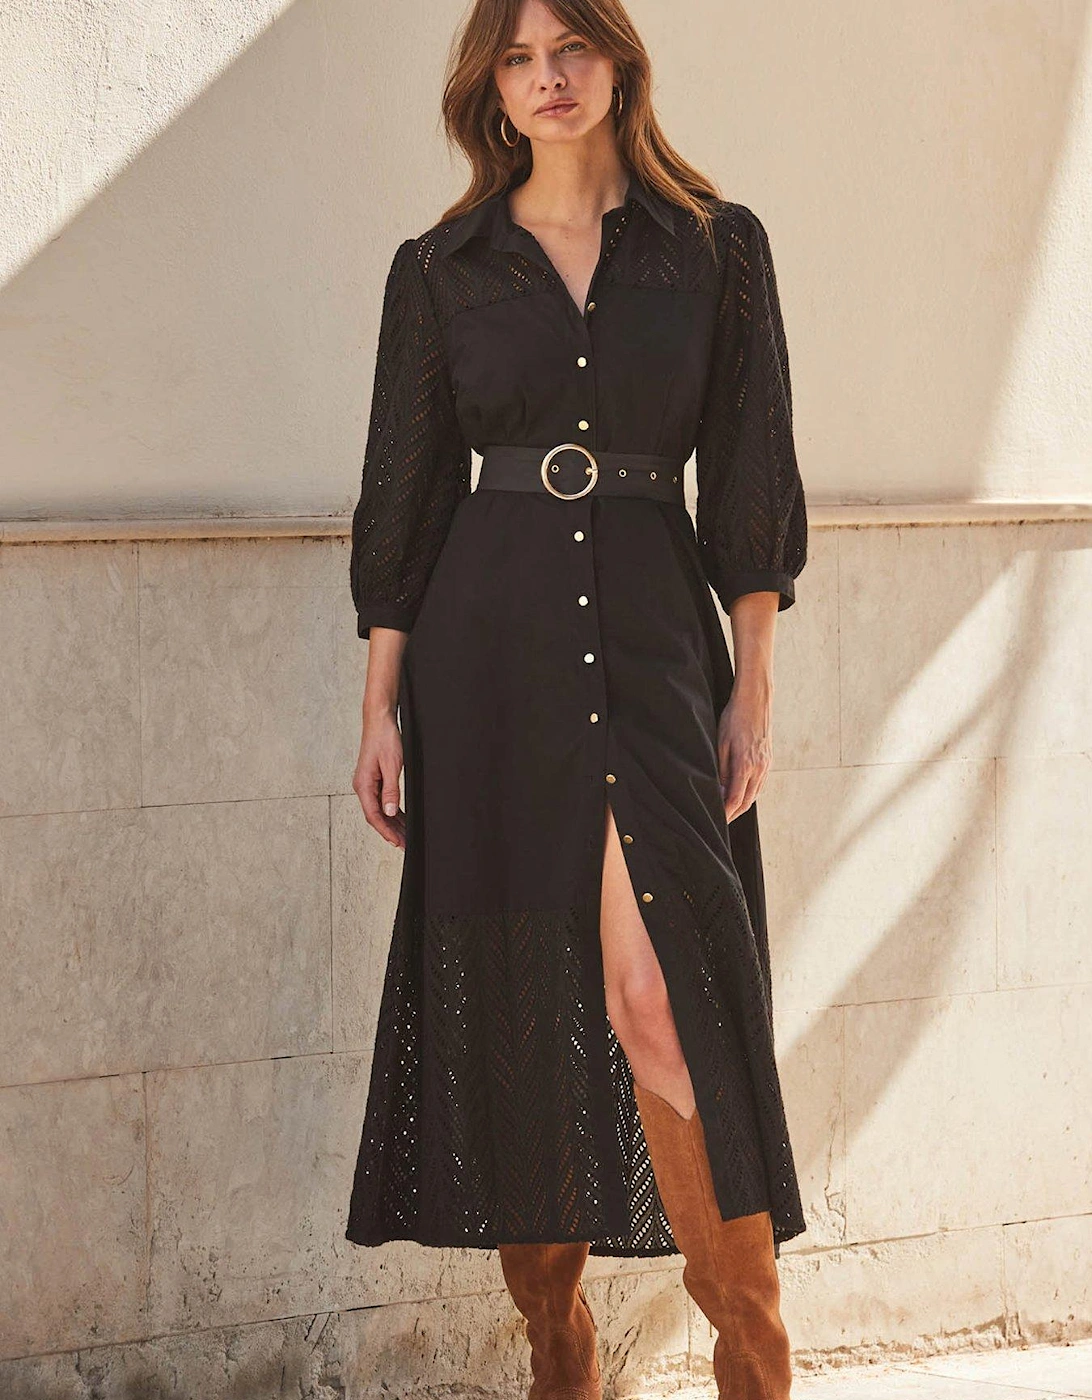 Broderie Sleeve Dress - Black, 2 of 1